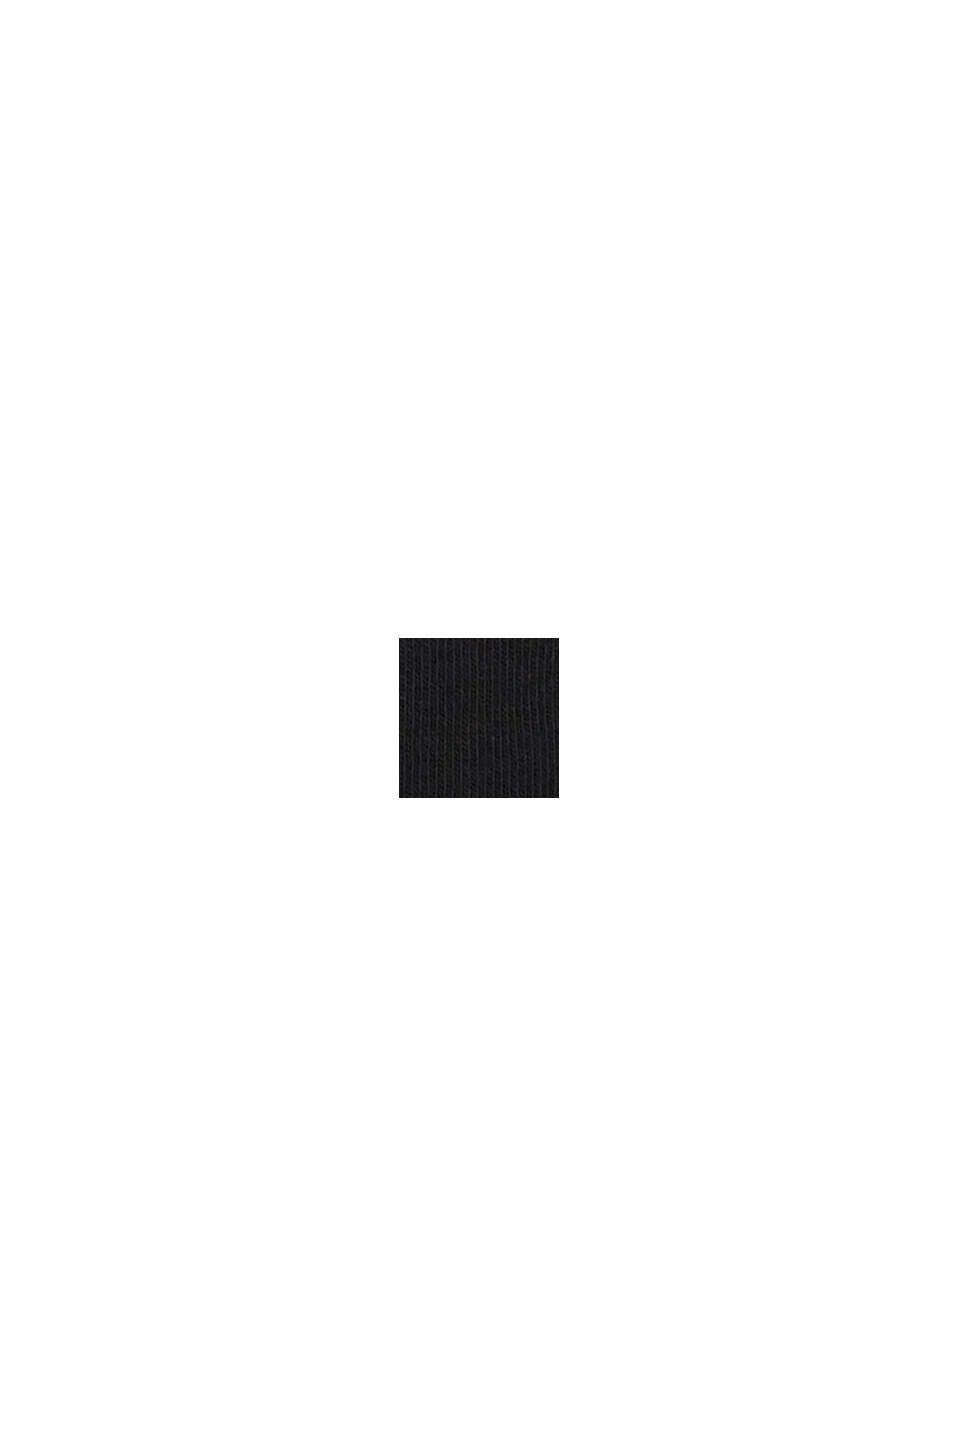 Knästrumpor i 2-pack med logo, BLACK, swatch